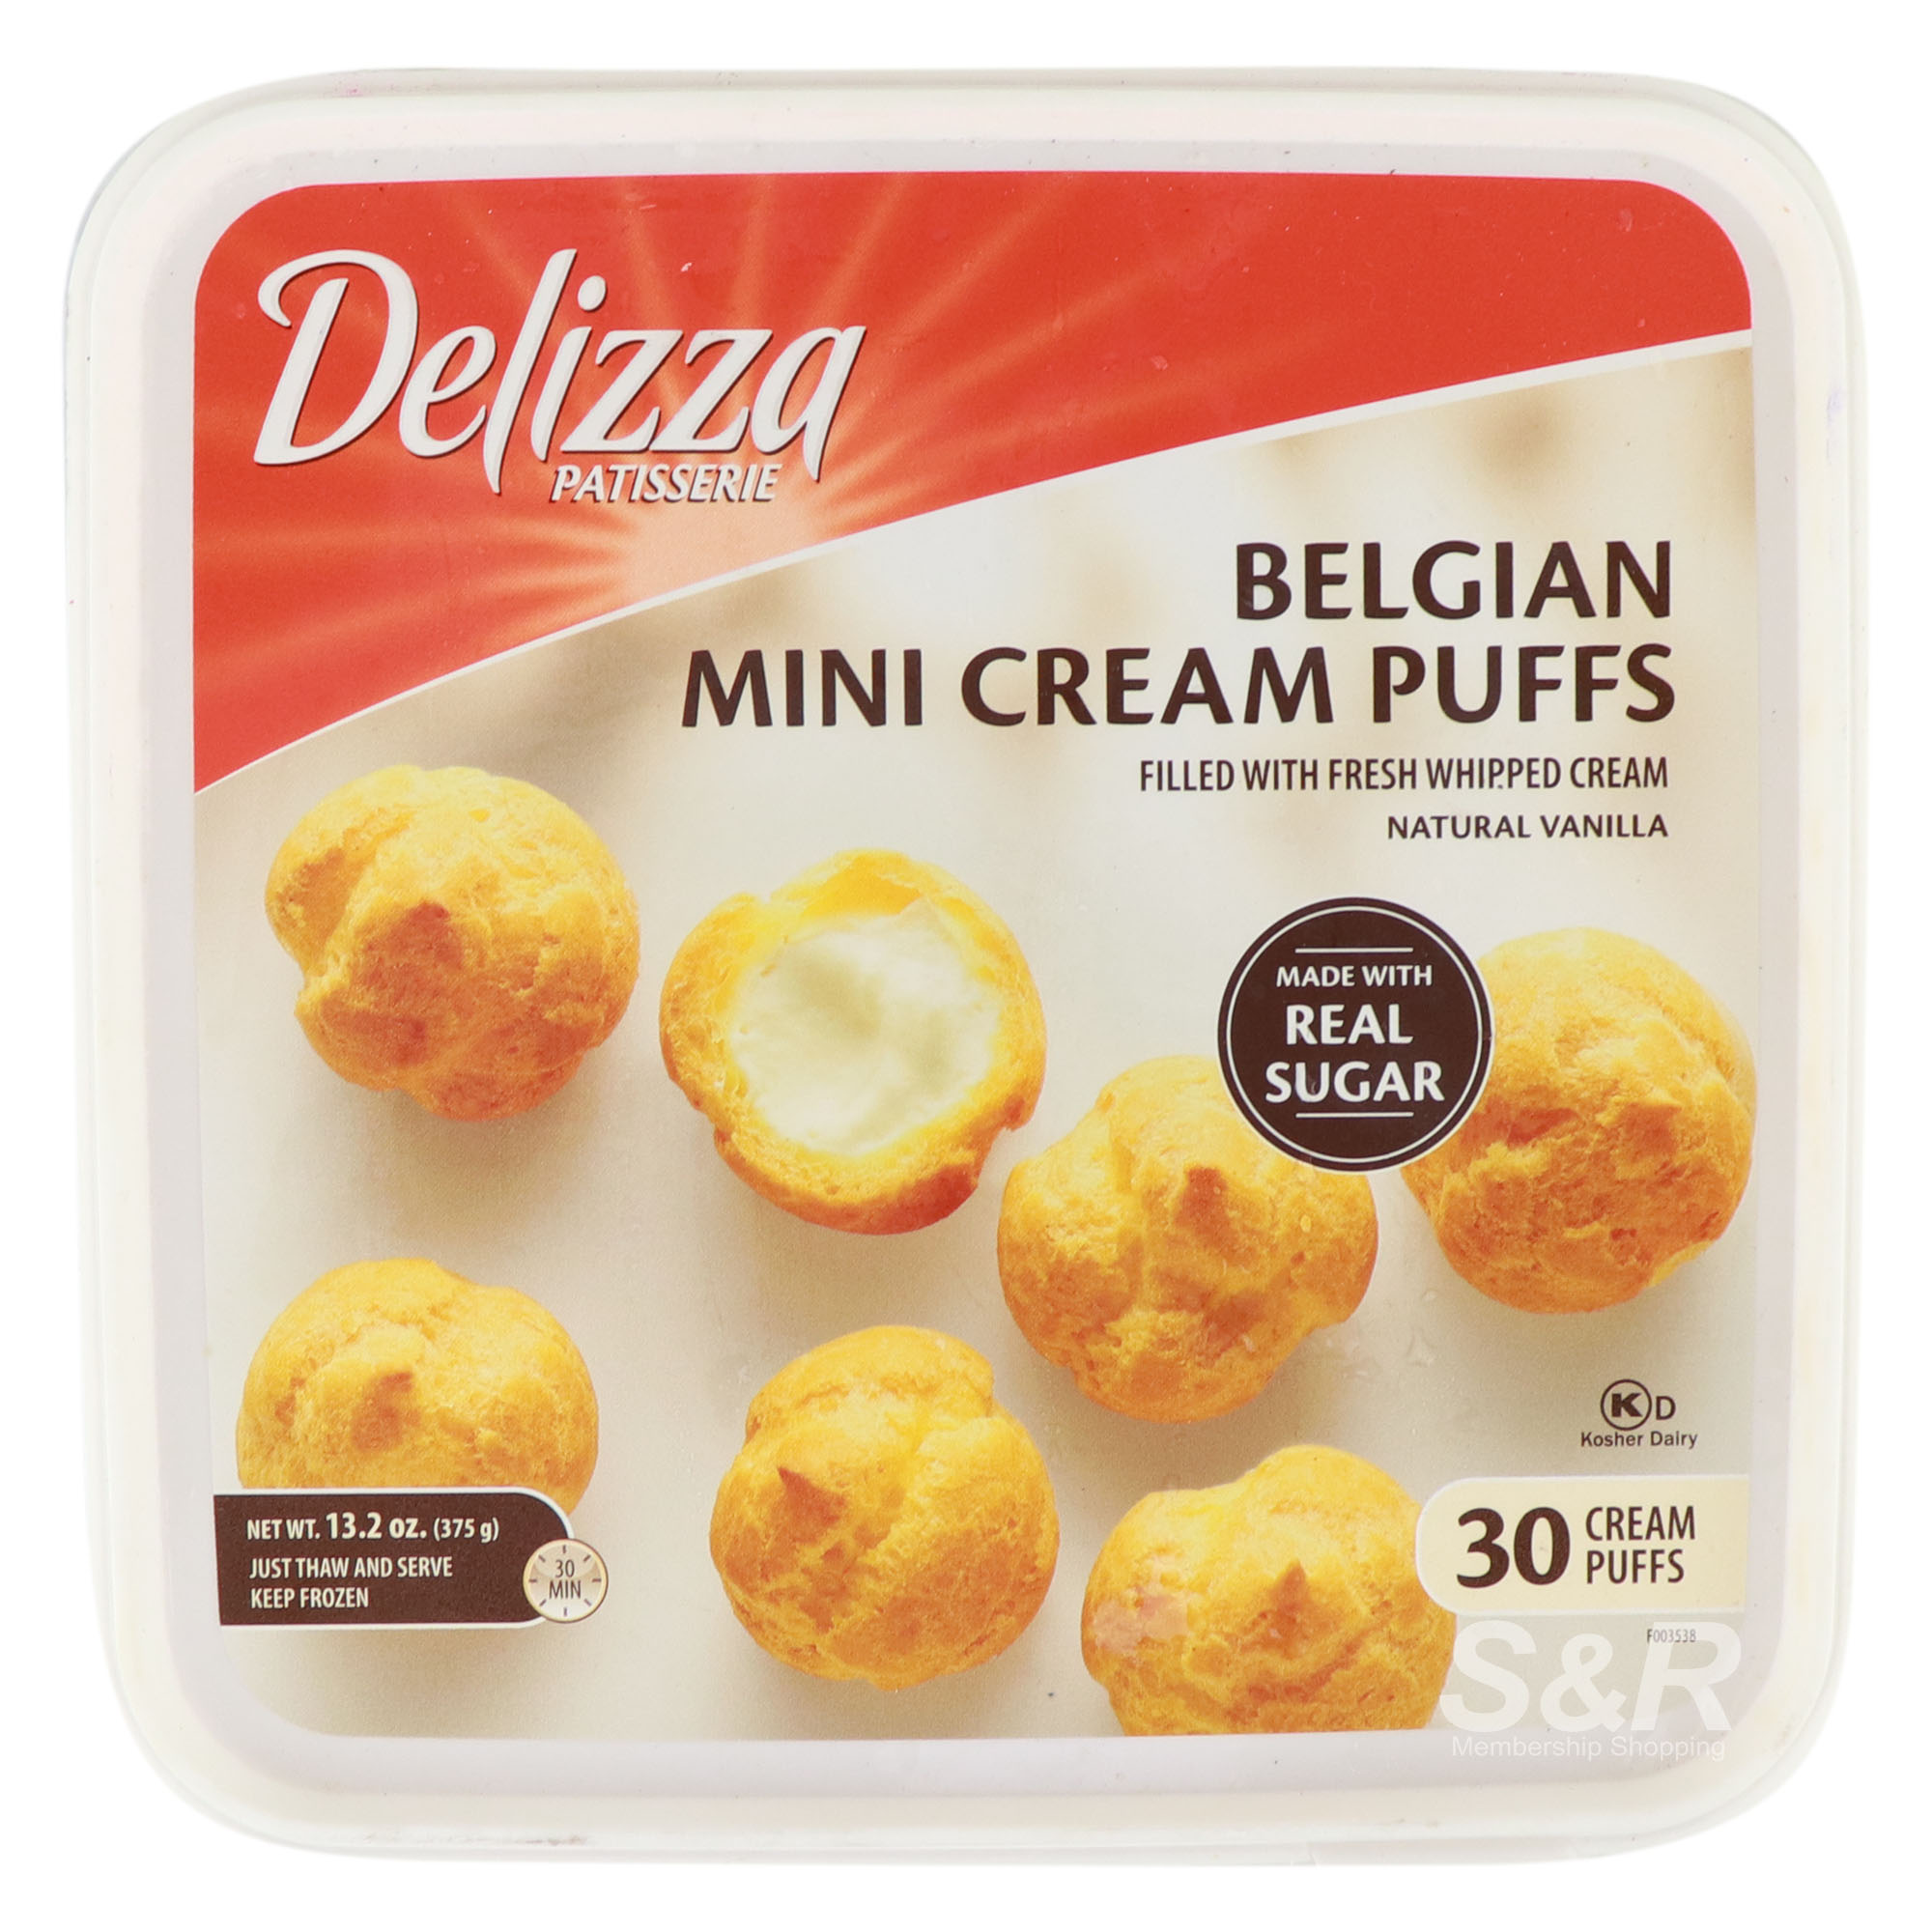 Delizza Belgian Mini Cream Puffs 30pcs